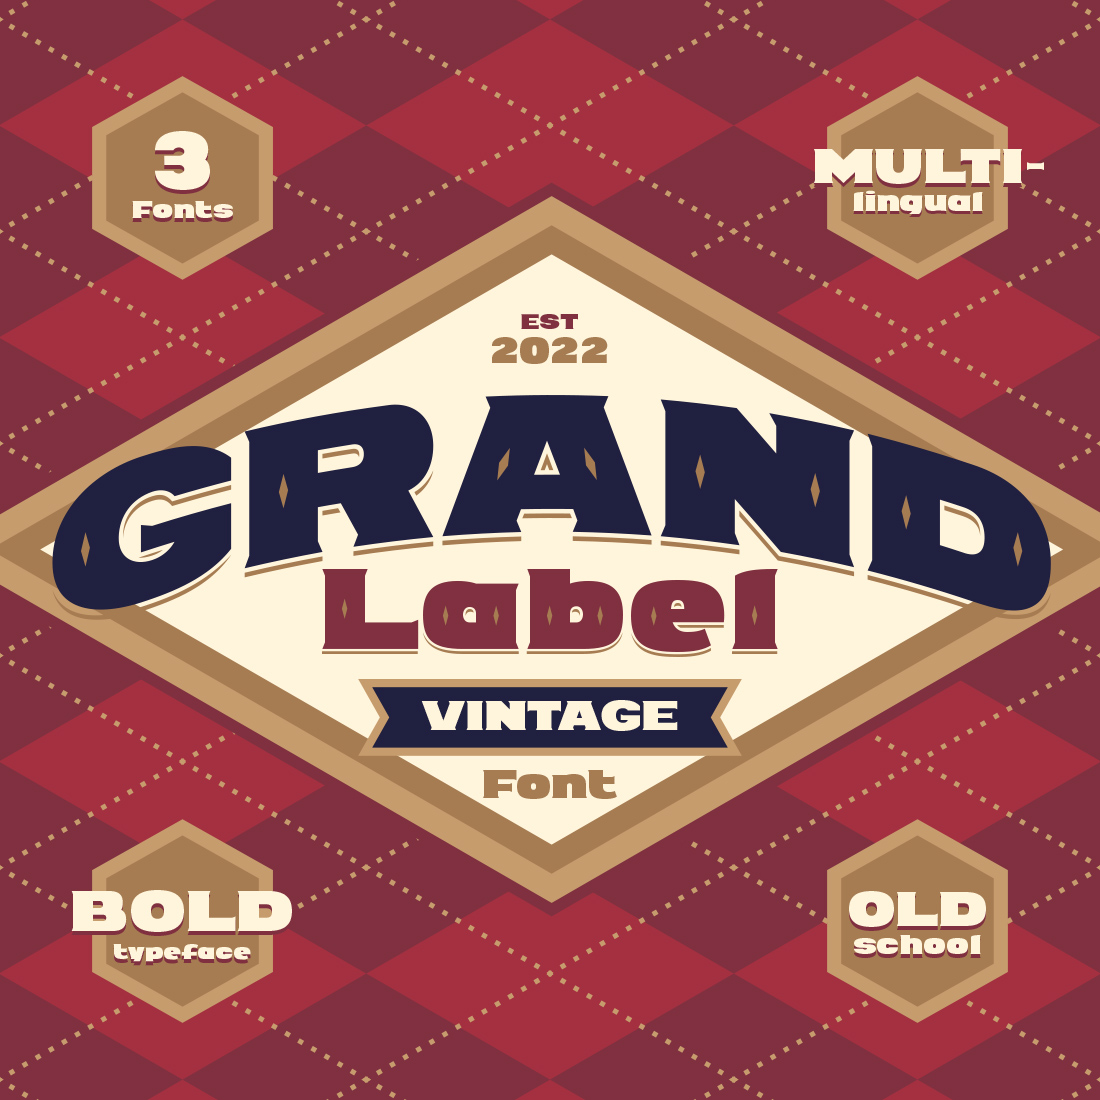 Bold Font Retro Grand Label Design cover image.